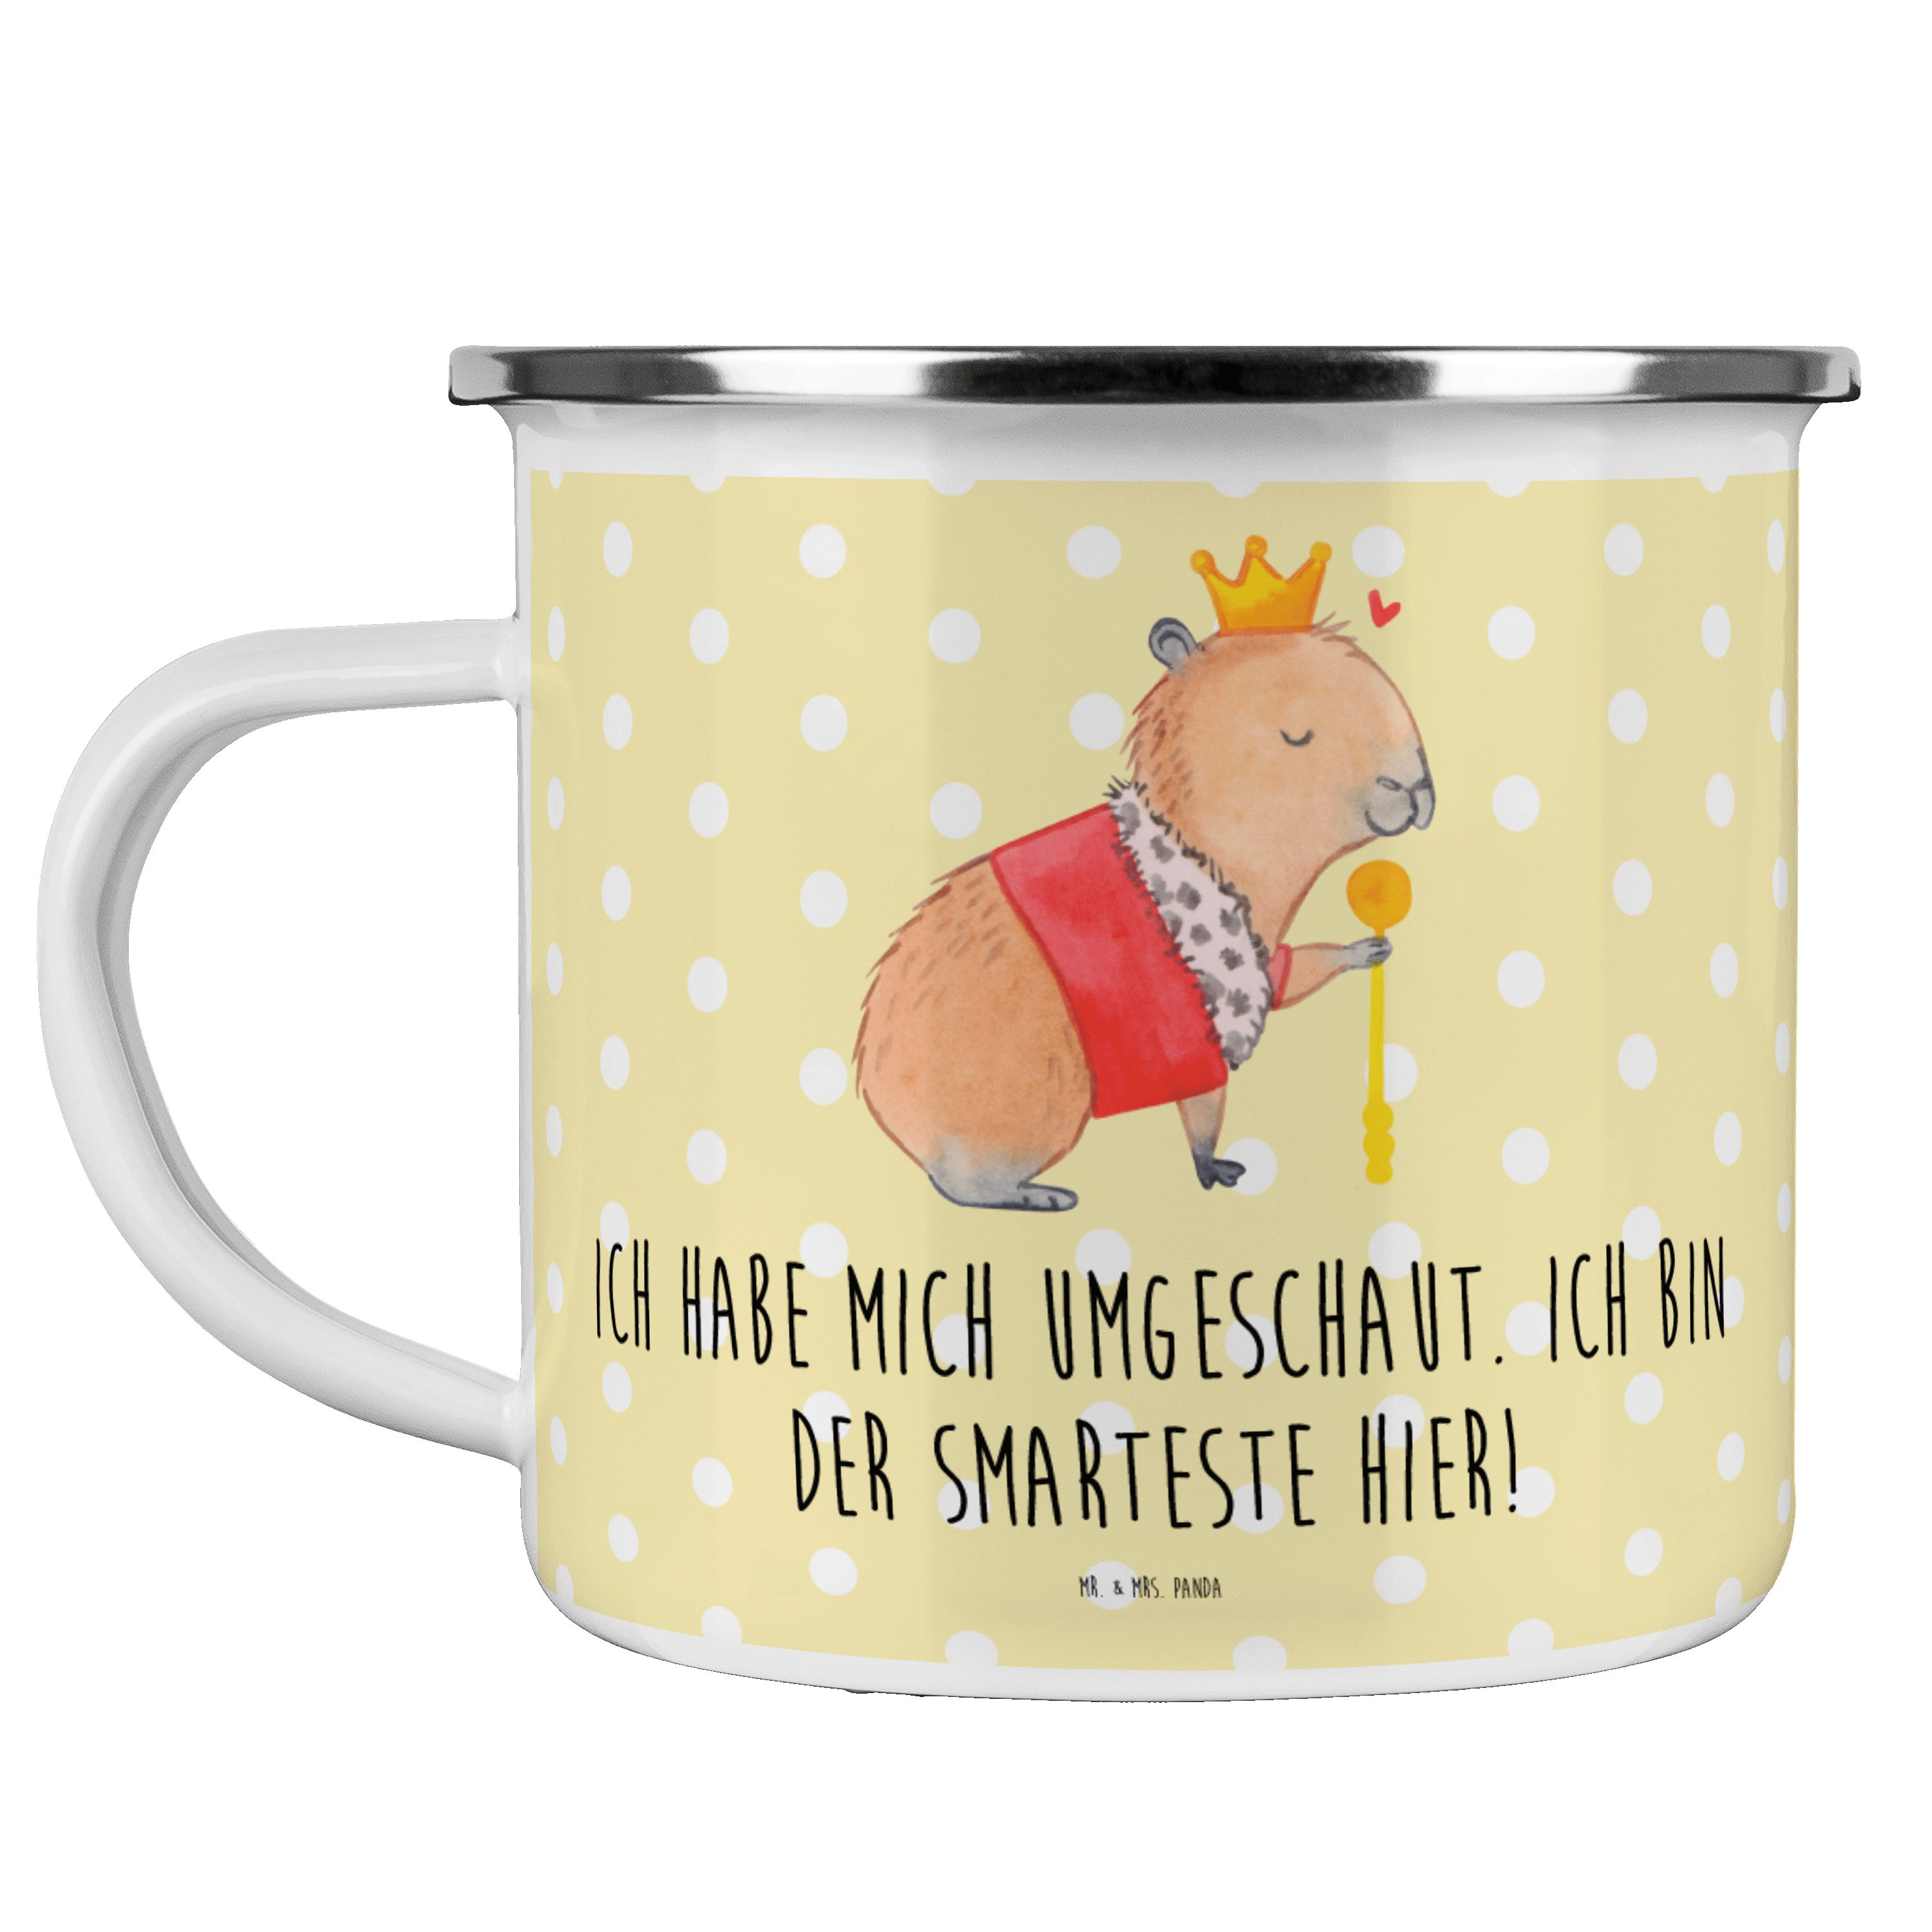 Mr. & Mrs. Panda Becher Capybara König - Gelb Pastell - Geschenk, lustige Sprüche, Edelstahl, Emaille